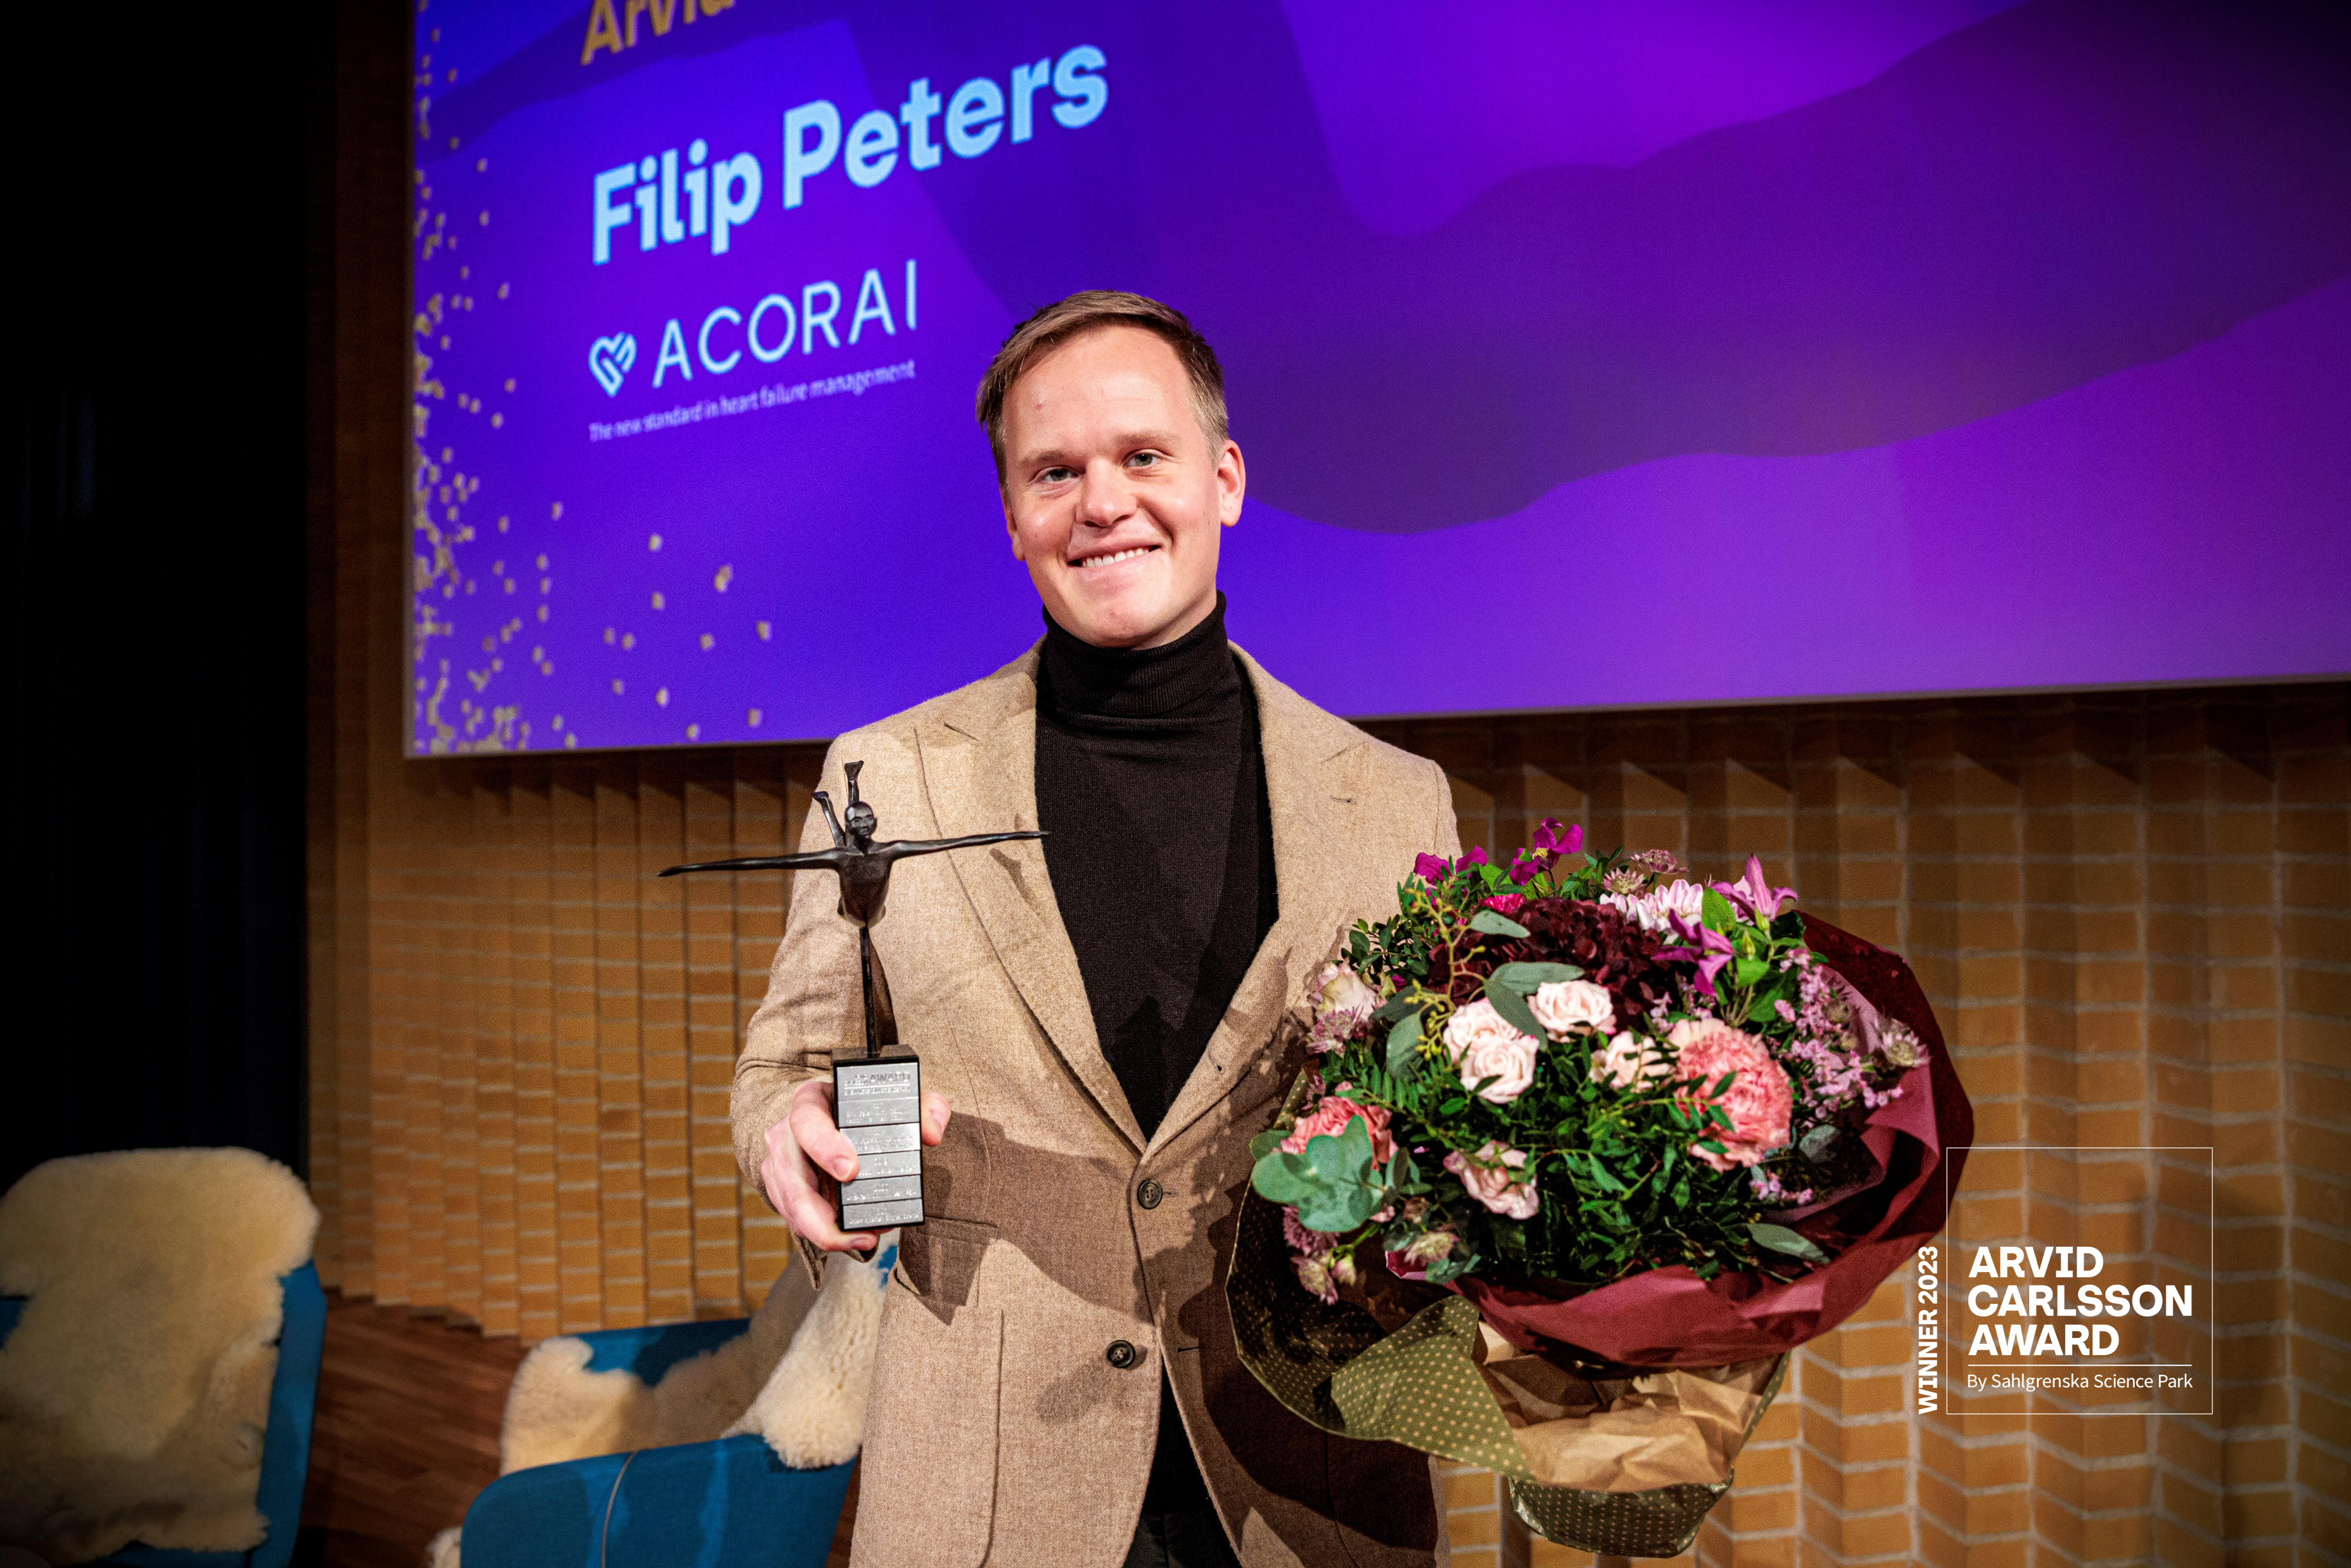 Filip Peters, Acorai